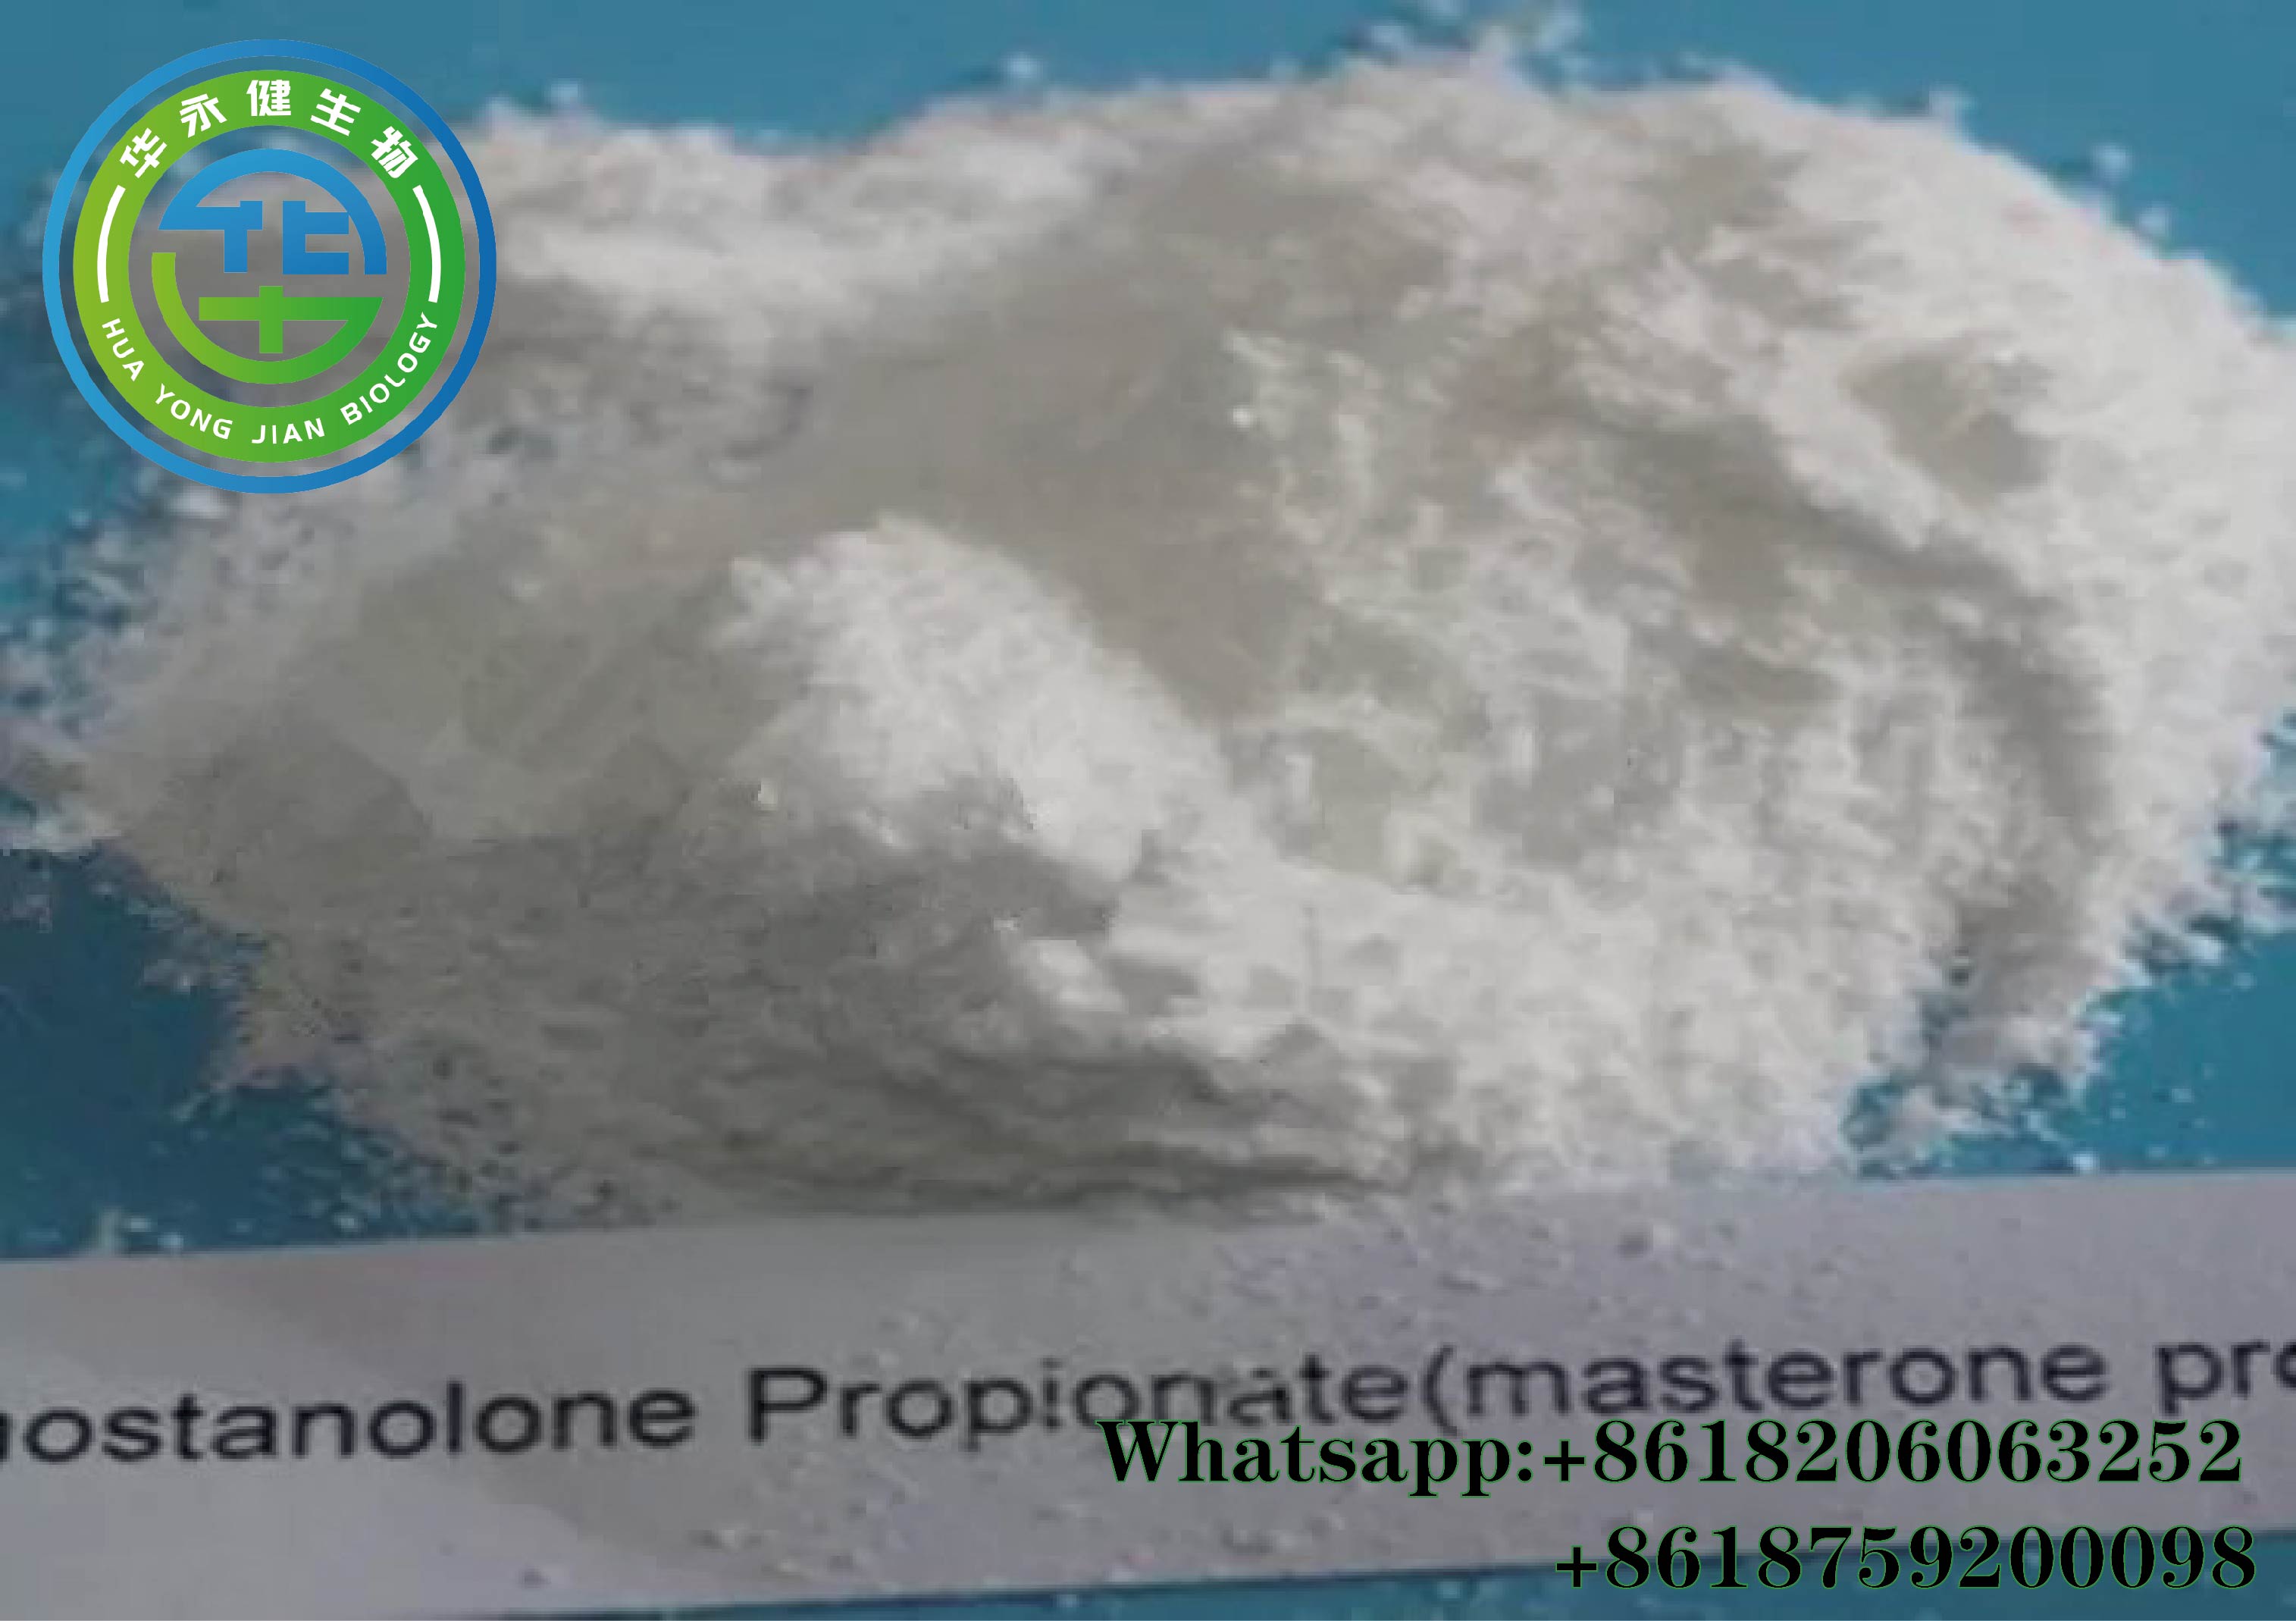 Drostanolone Propionate(Masteron p)25